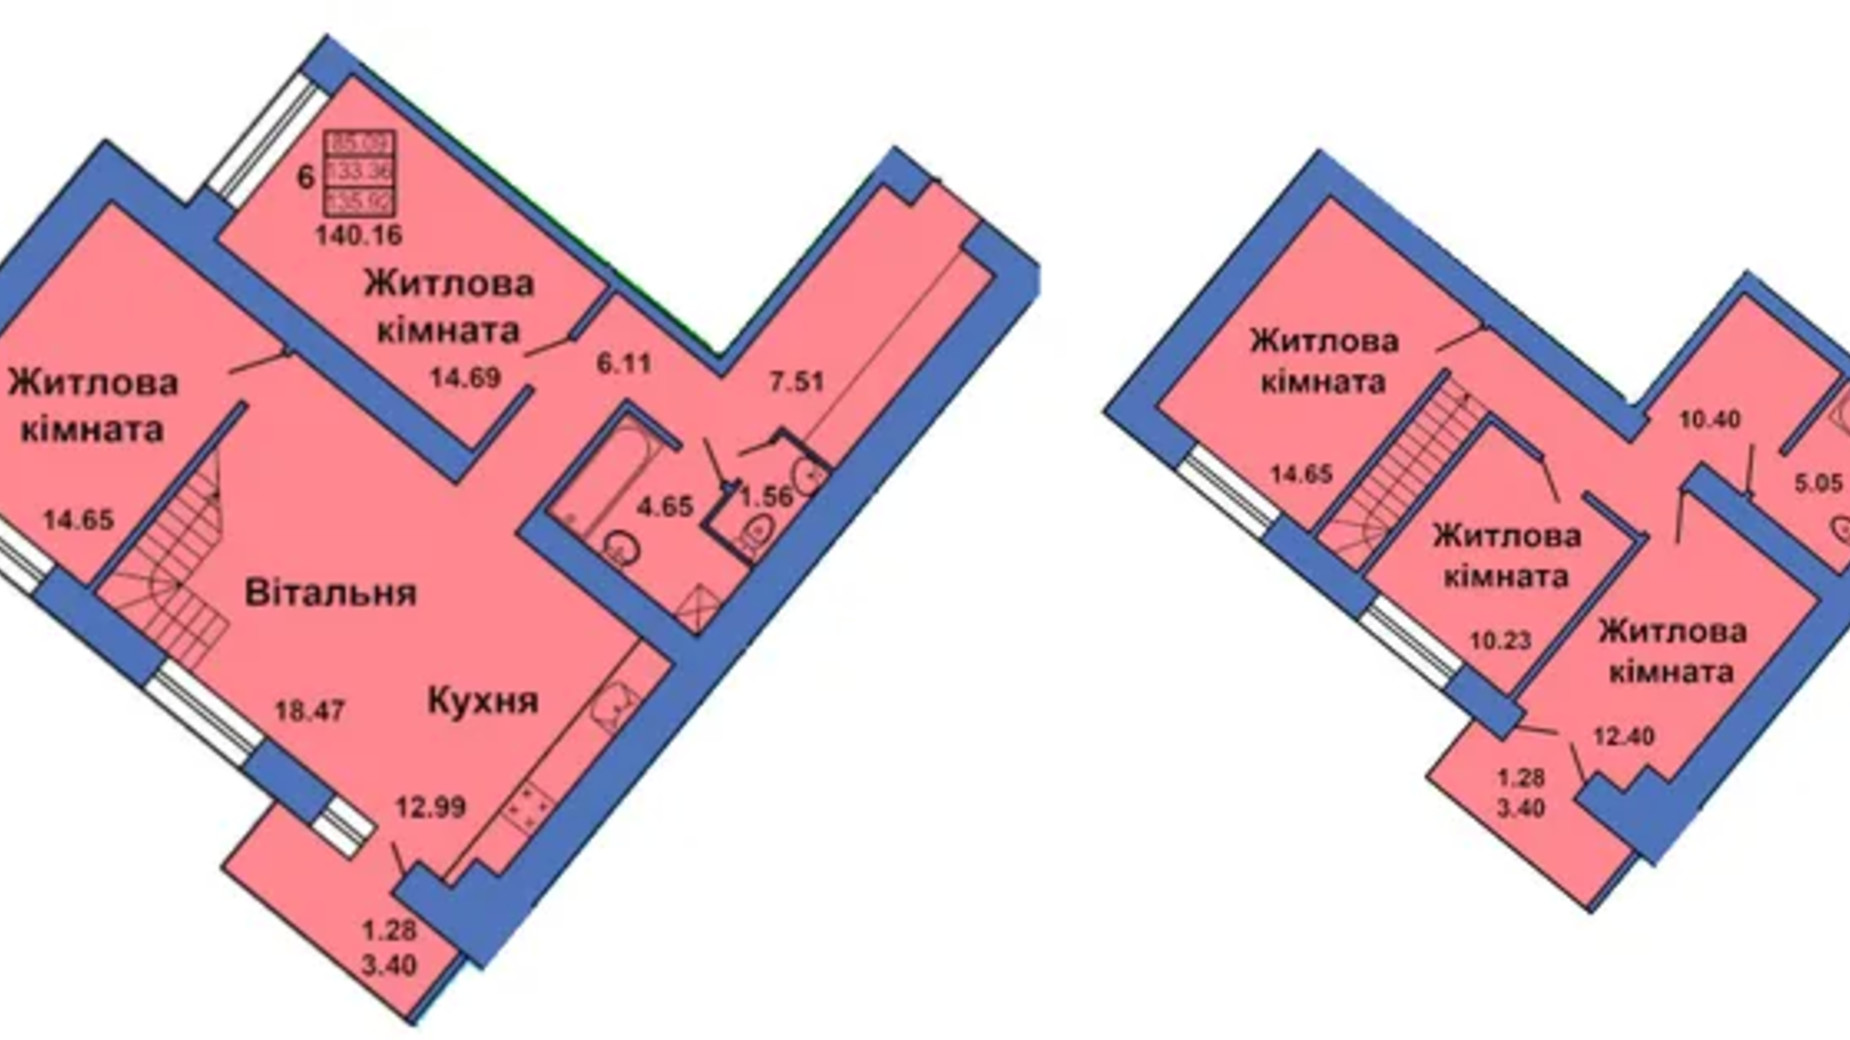 Планировка много­уровневой квартиры в ЖК ул. Весенняя, 9 140.16 м², фото 686365